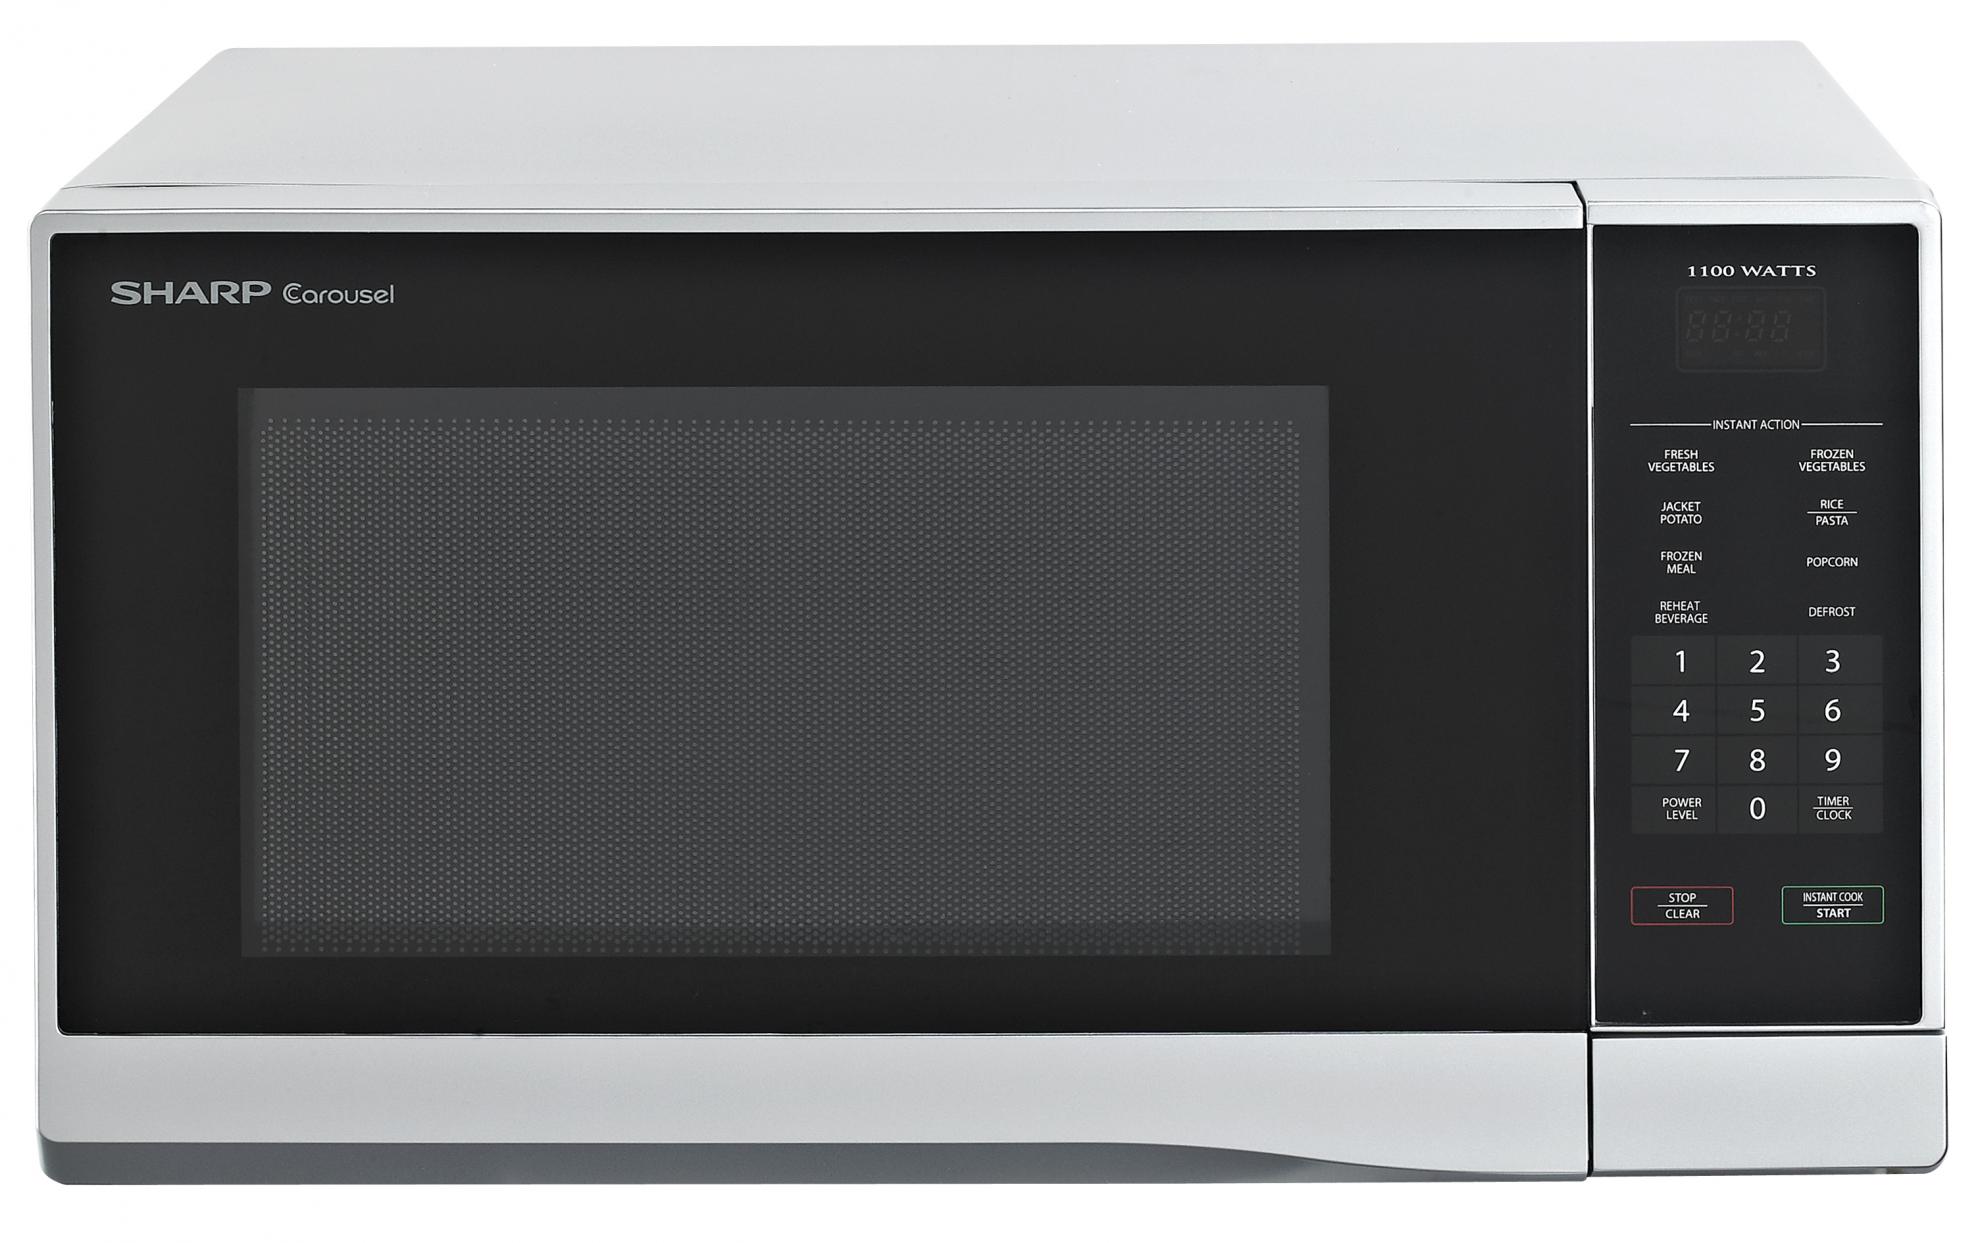 Midsized Microwave - Silver - 1,100W